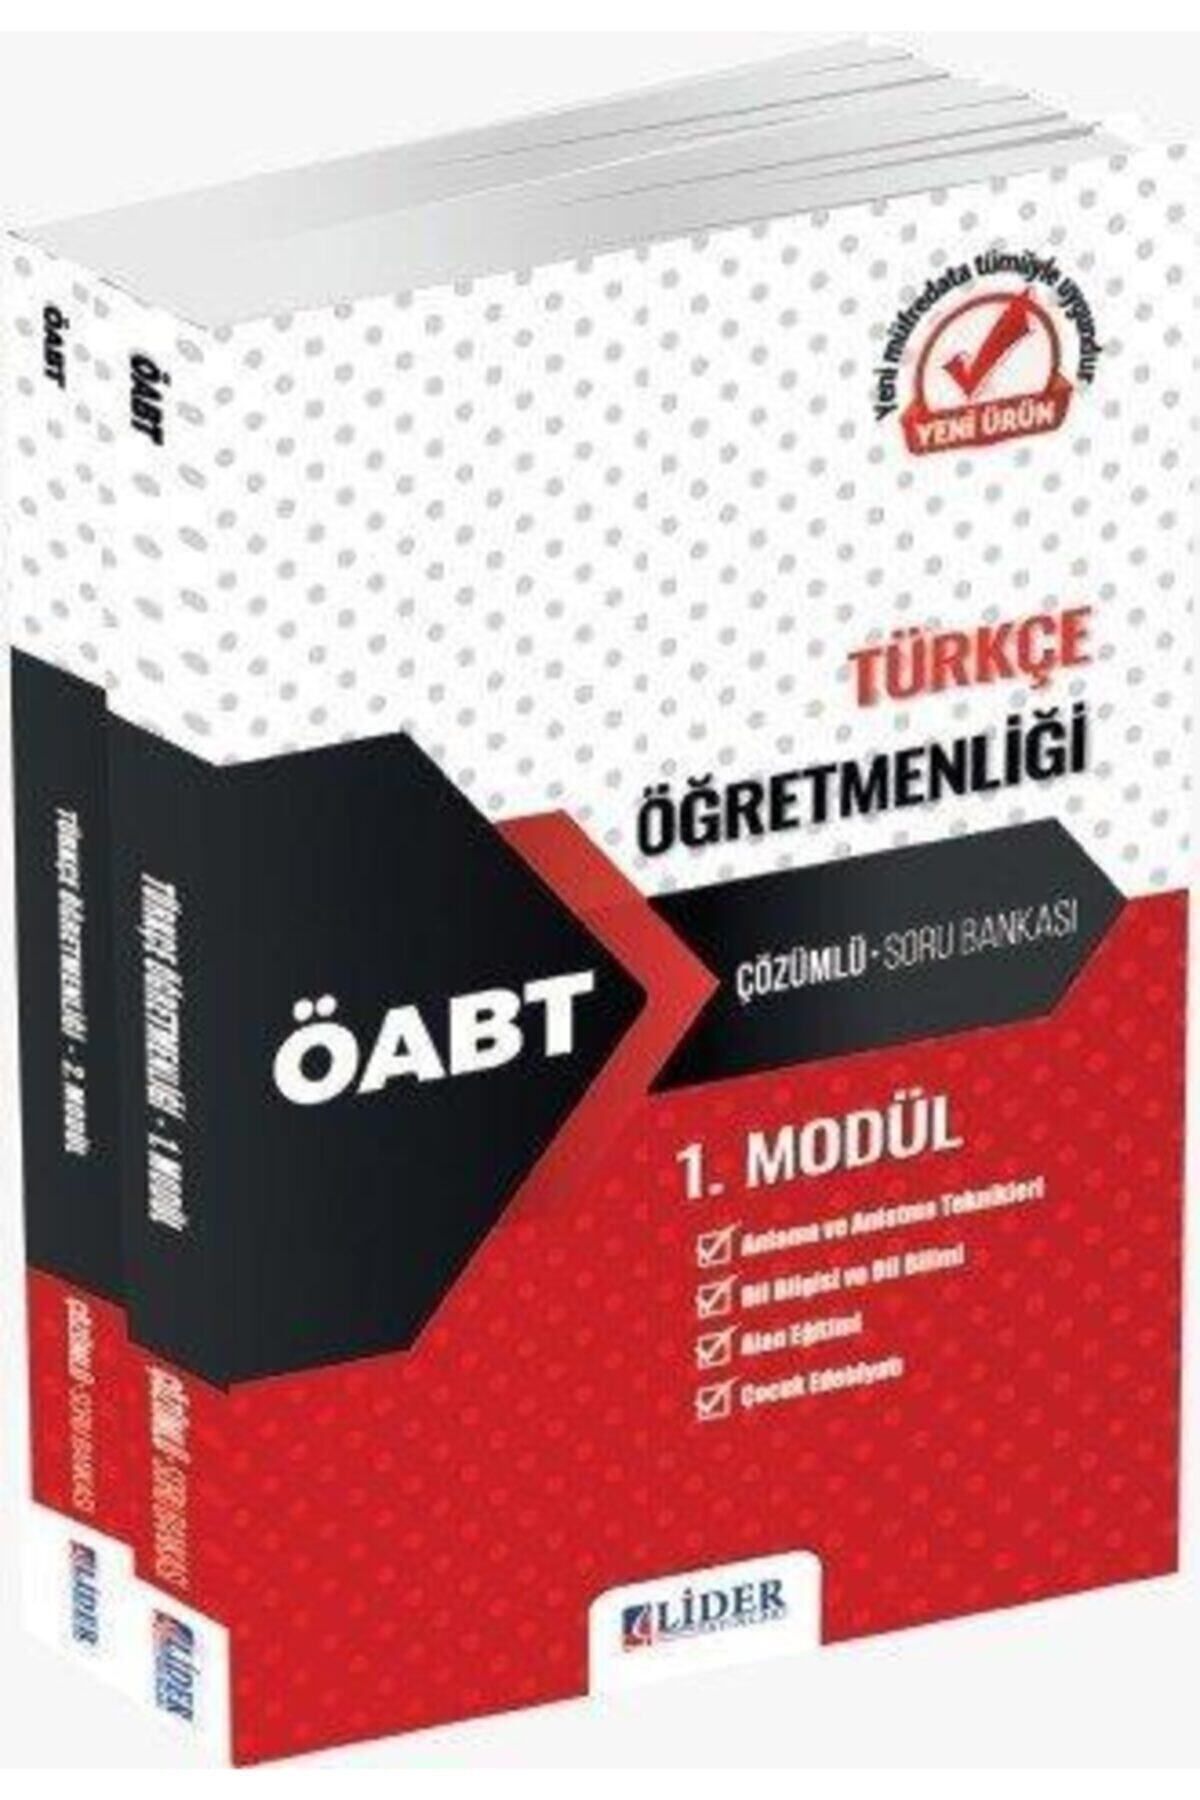 Lider Yayınları 2022 Öabt Türkçe Öğretmenliği Çözümlü Soru Bankası Modüler Set